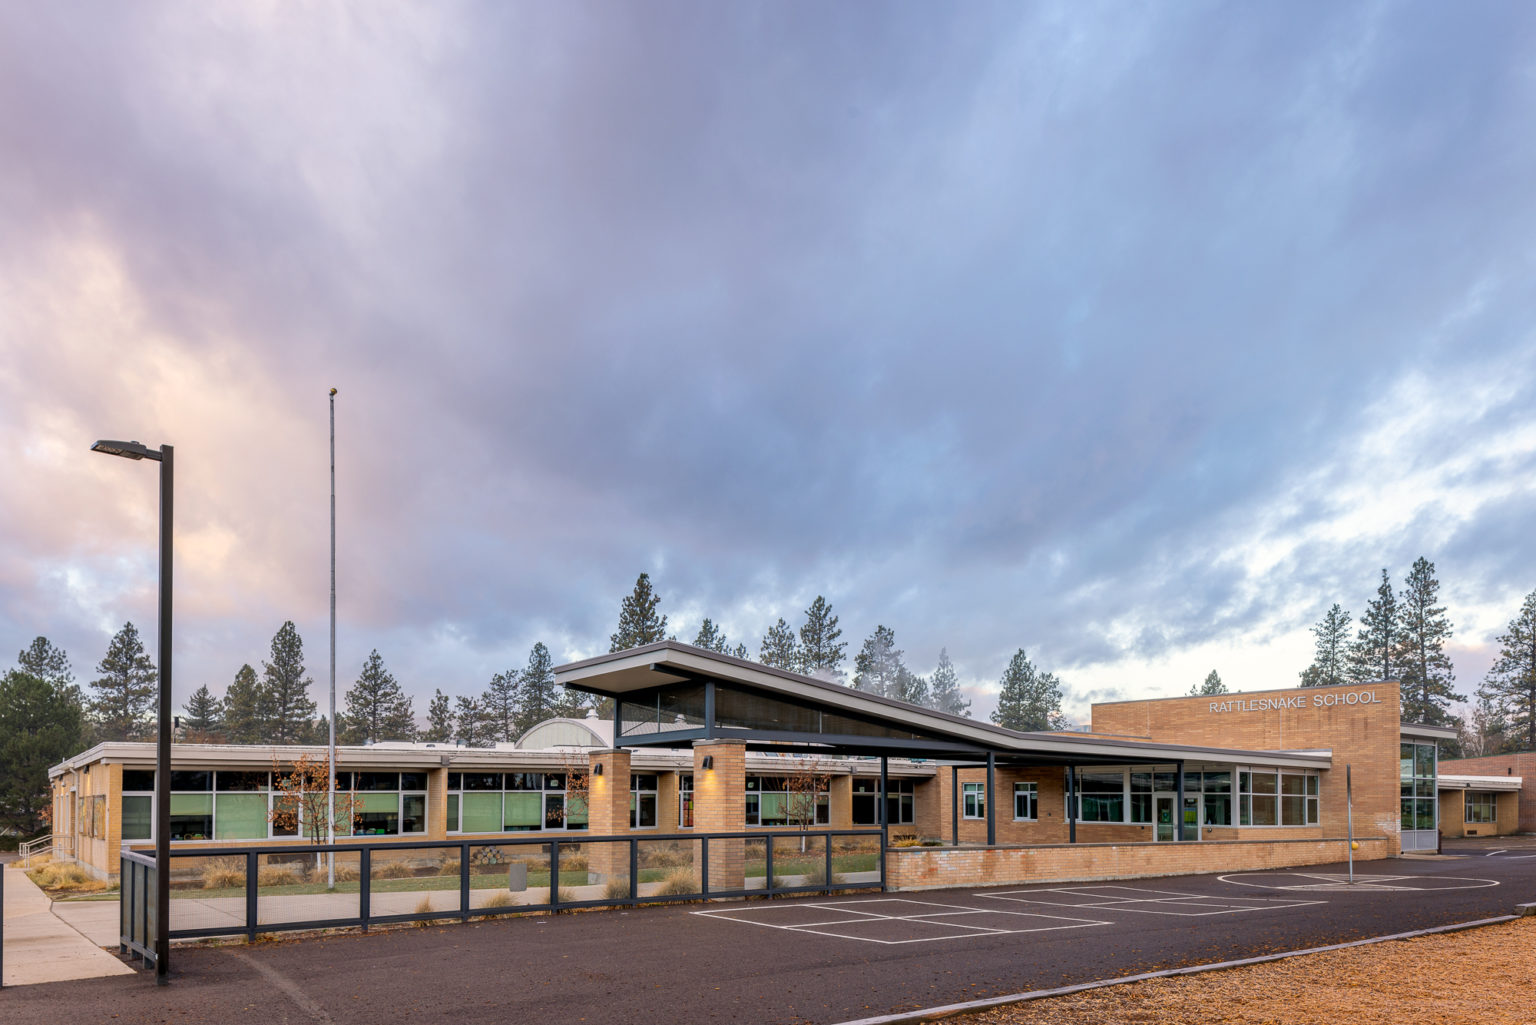 Rattlesnake Elementary School in Missoula, Montana